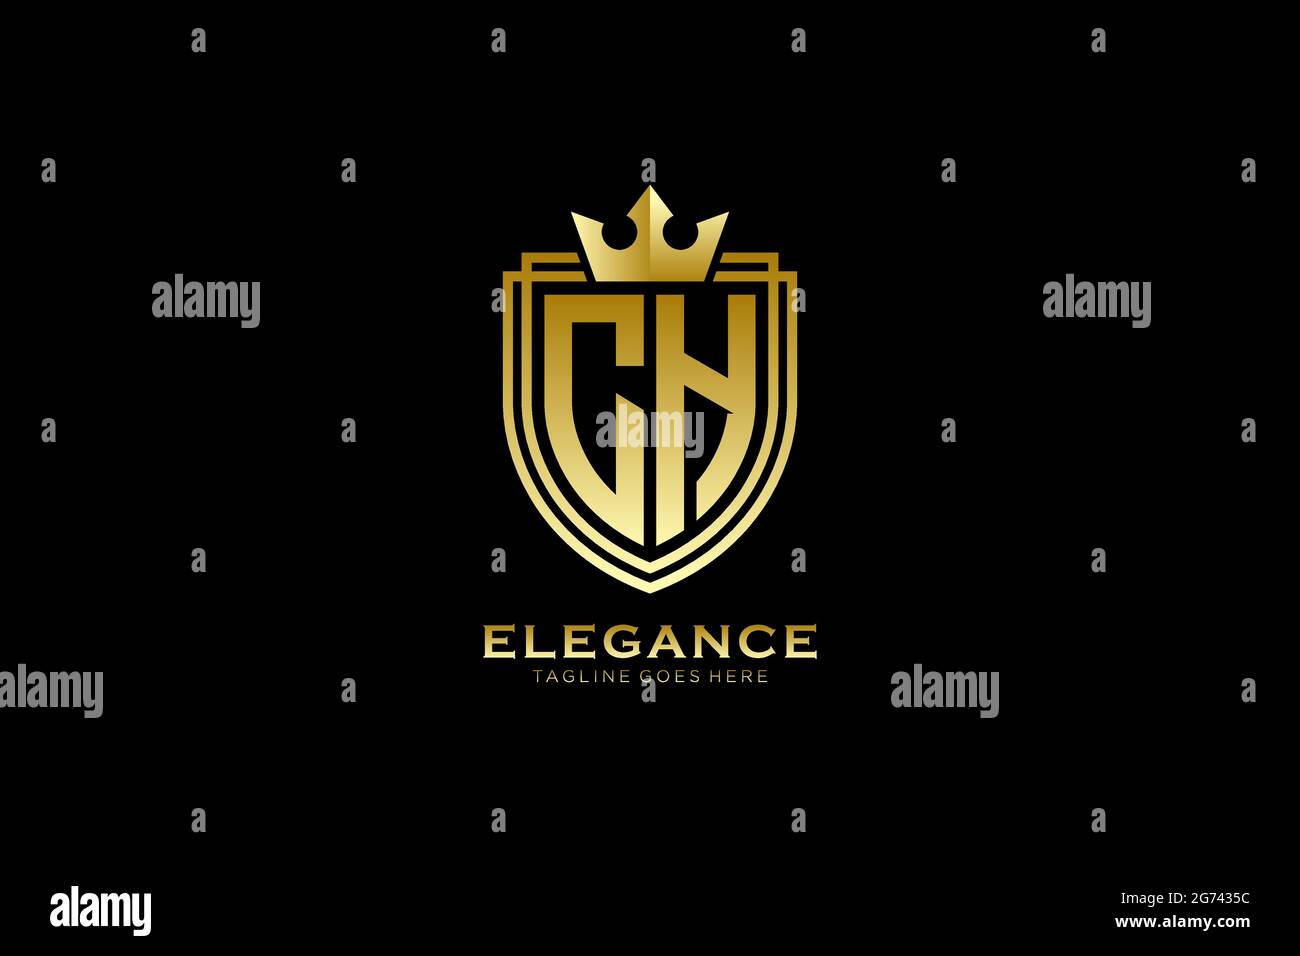 CH Elegantes Luxus-Monogramm-Logo oder Badge-Vorlage mit Rollen und königlicher Krone - perfekt für luxuriöse Branding-Projekte Stock Vektor